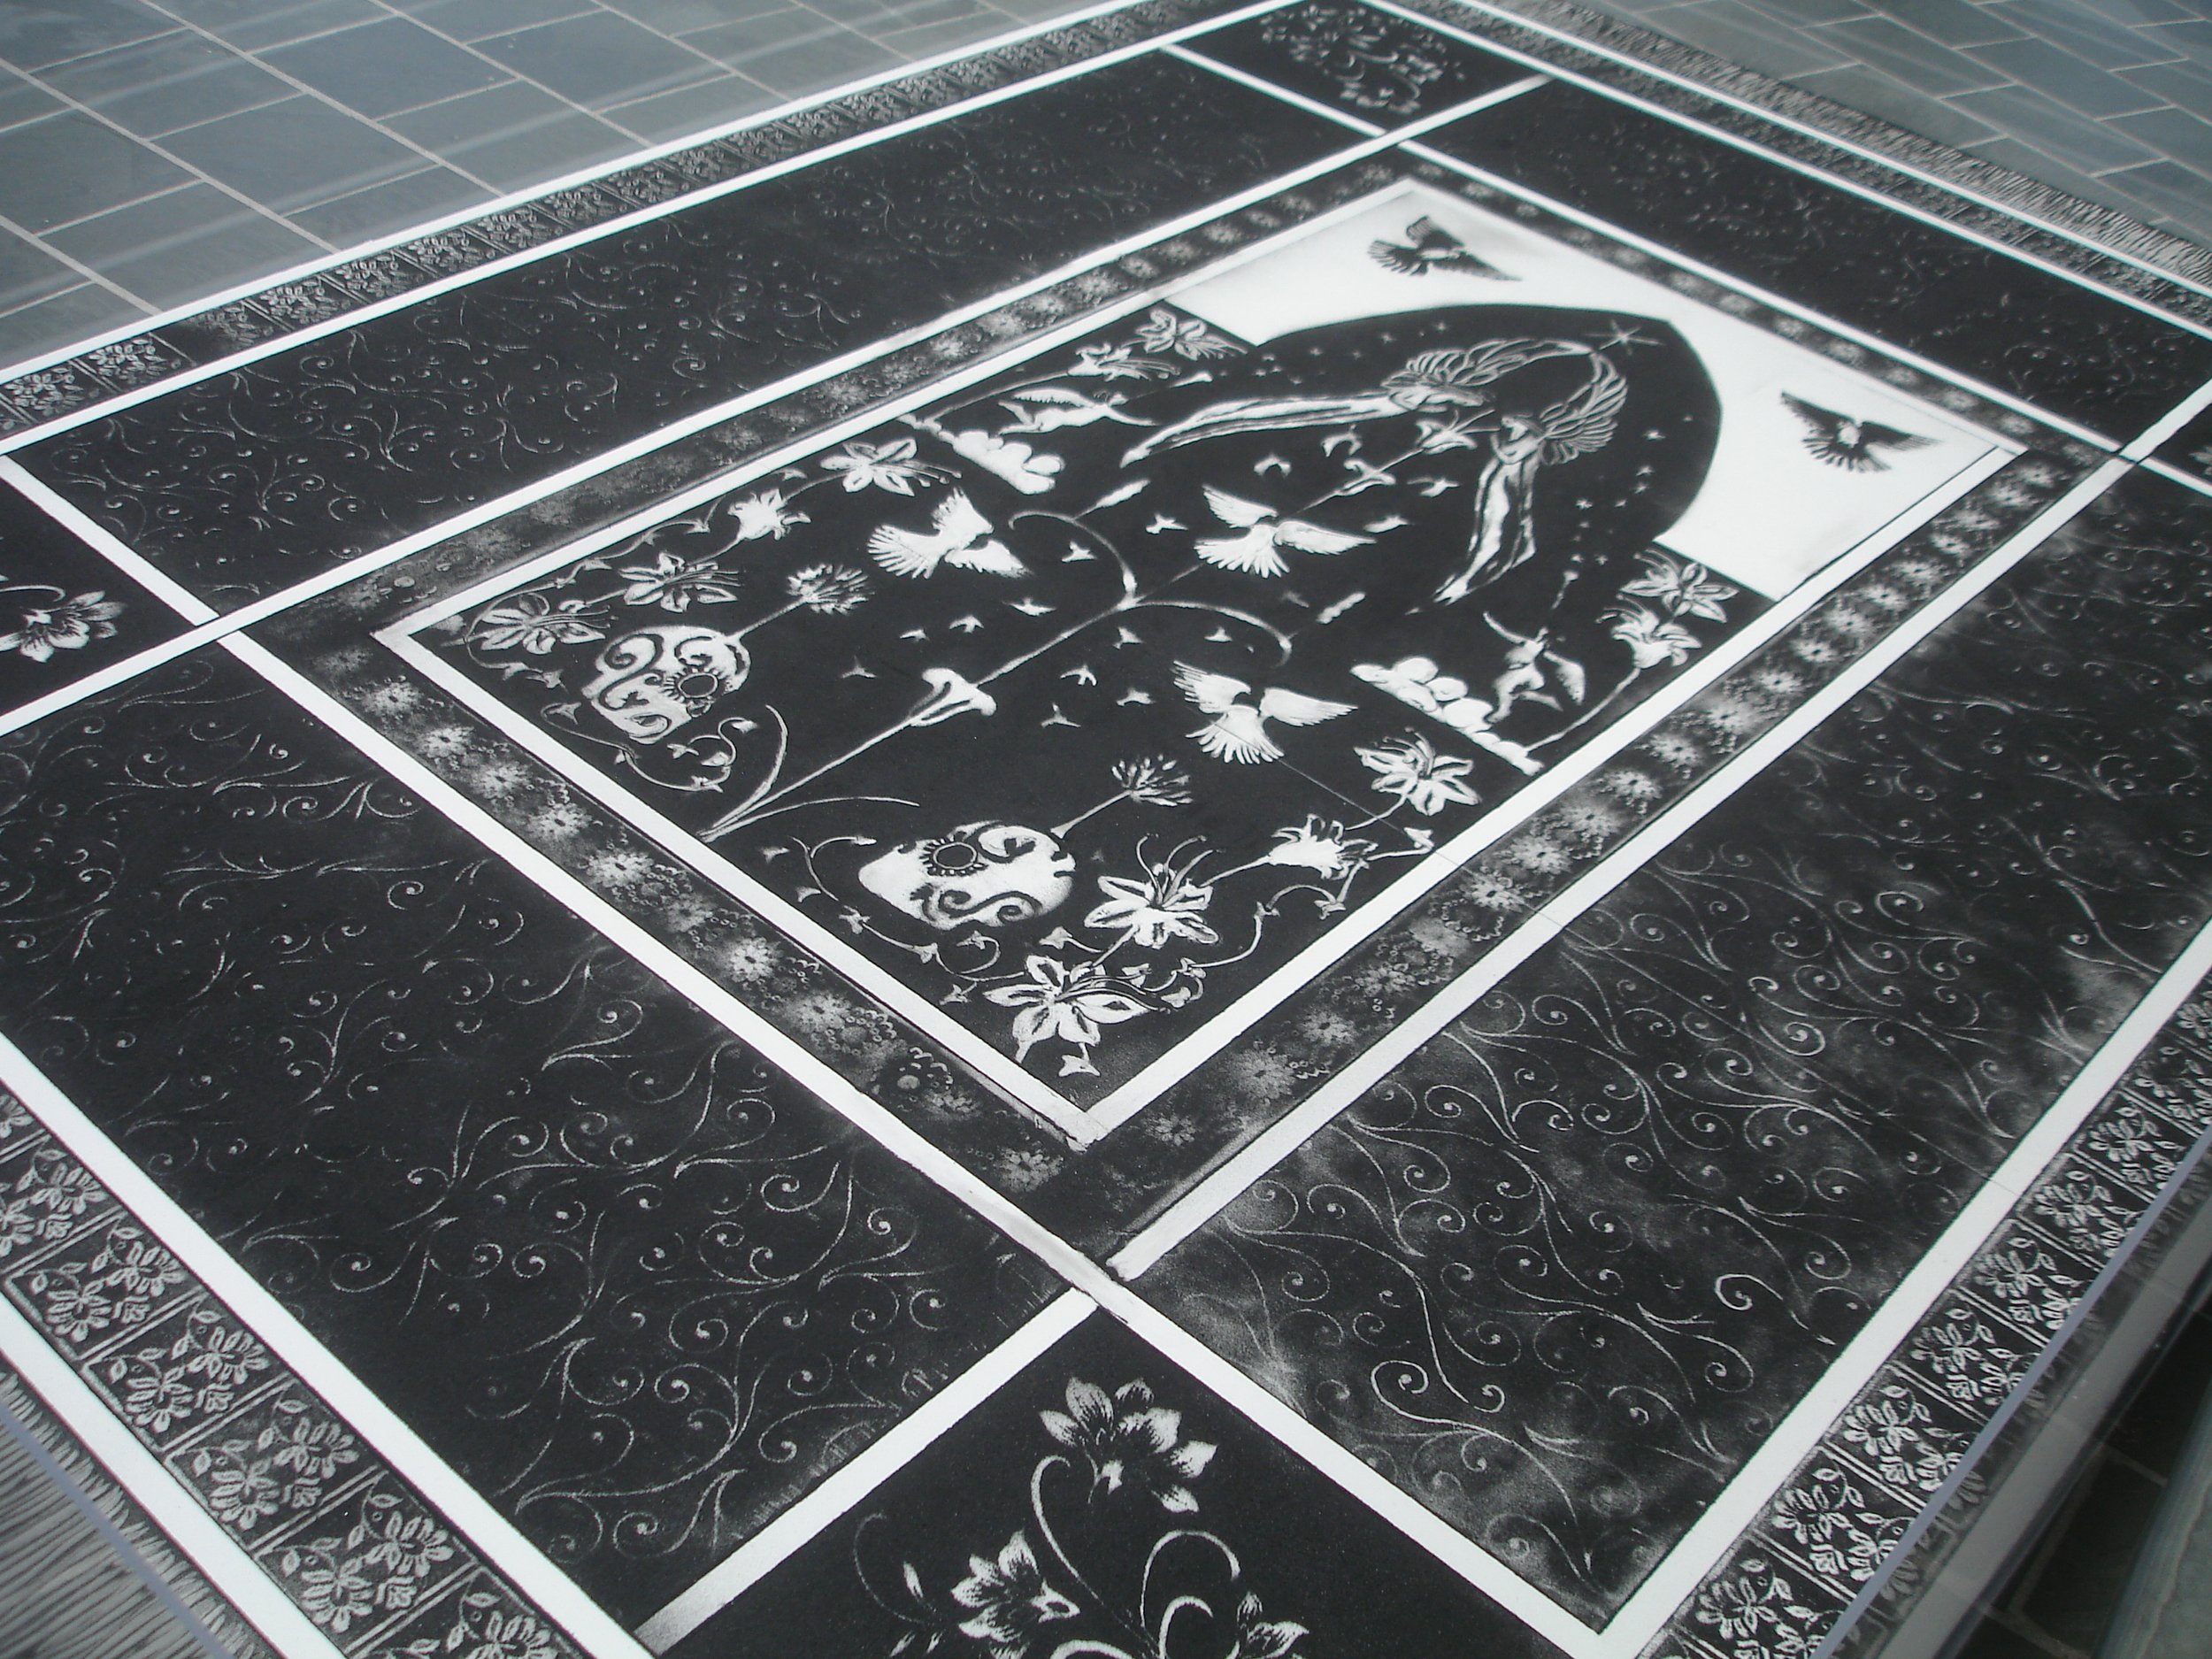 Celestial Dust Carpet, Tate St.Ives, 2007